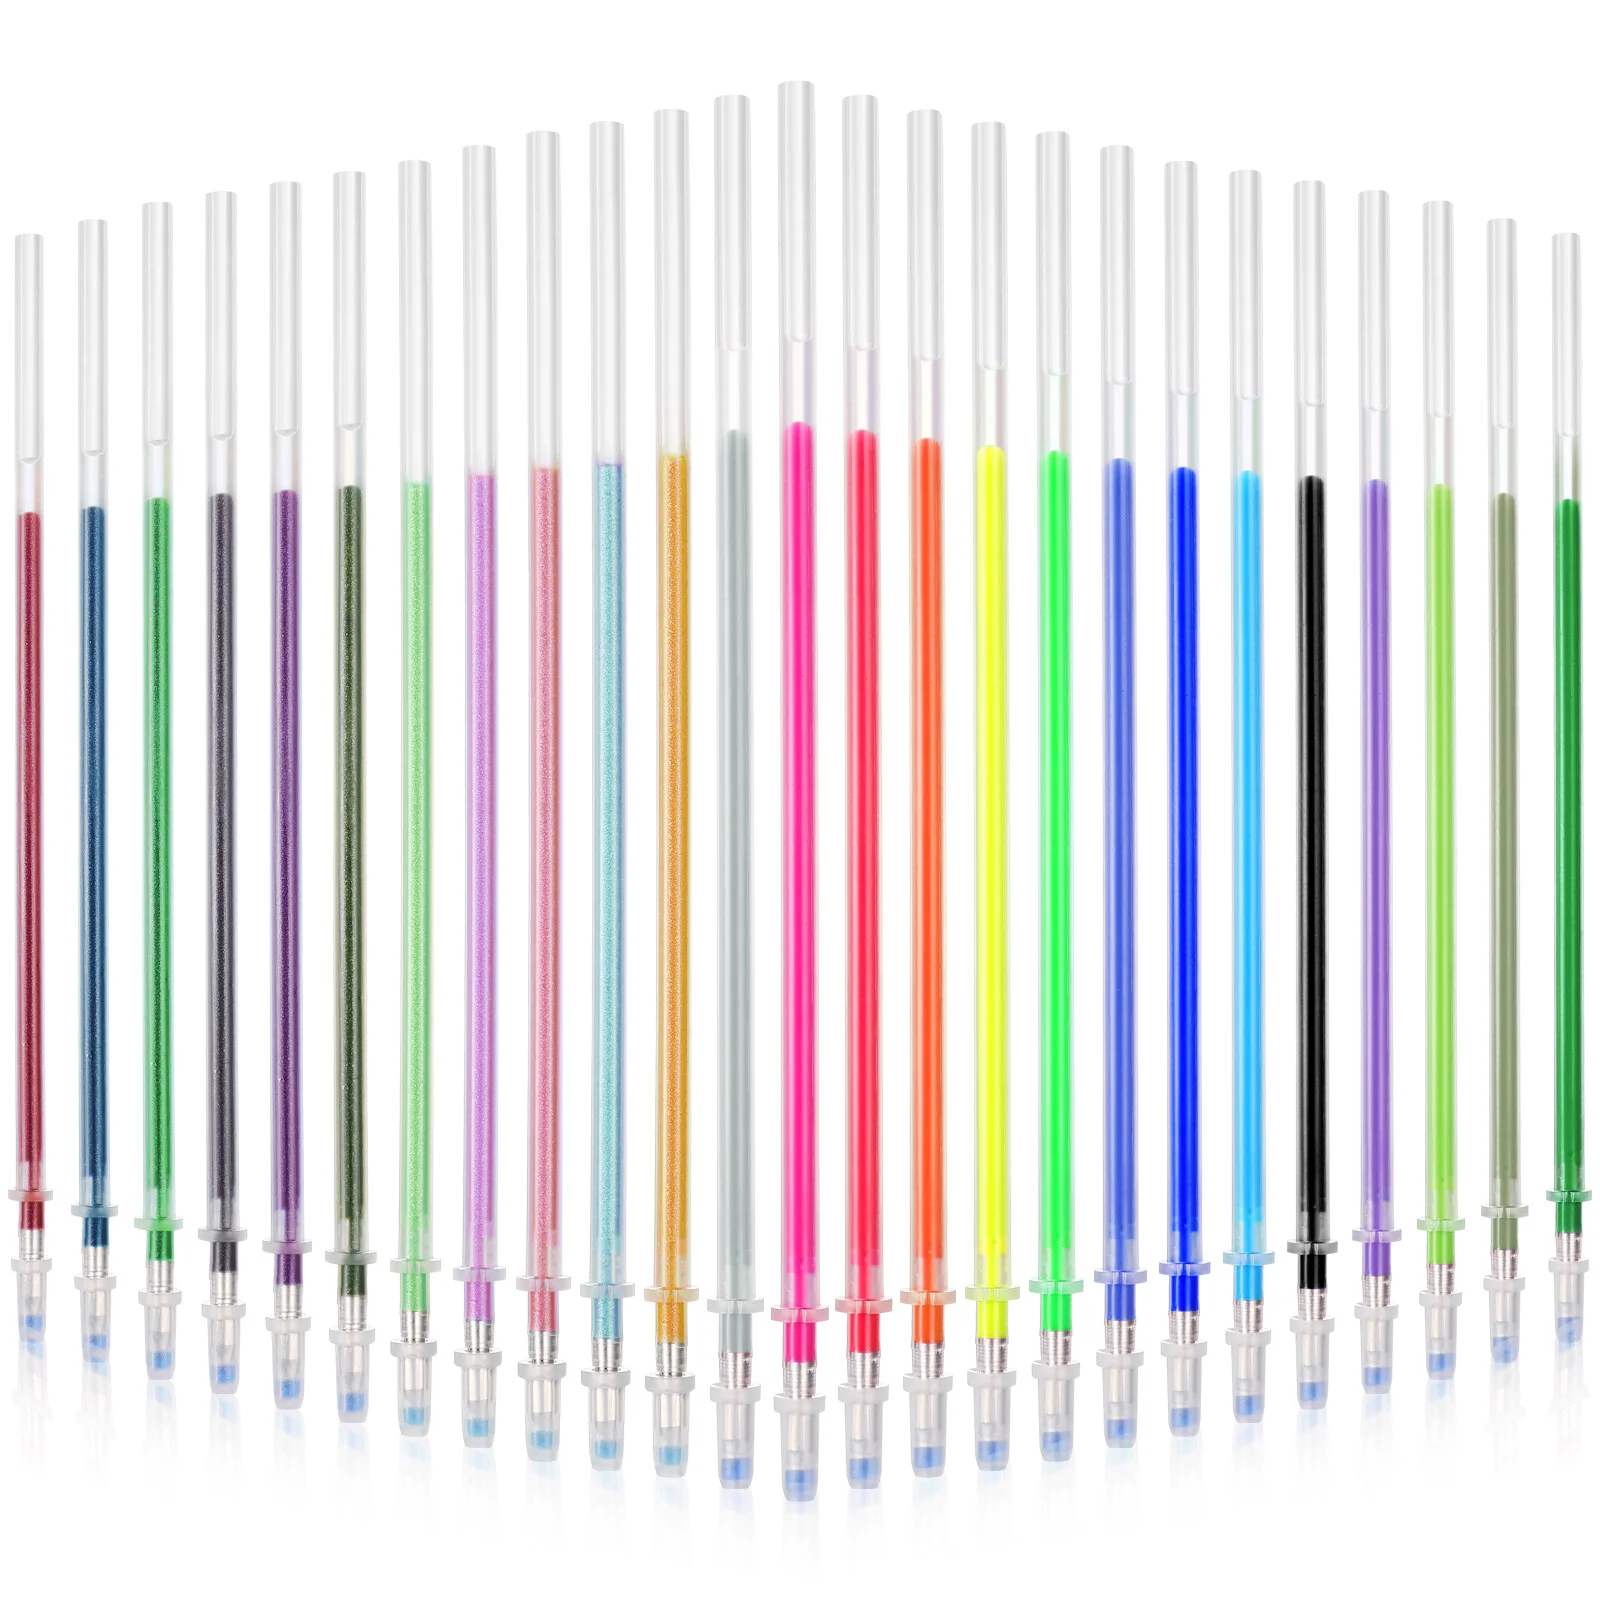 

100 блестящие стержни для ручек, 0,8 мм Красочные Зеркальные ручки, блестящие цветные ручки, маркеры для творчества и рисования (смешанные цвета)